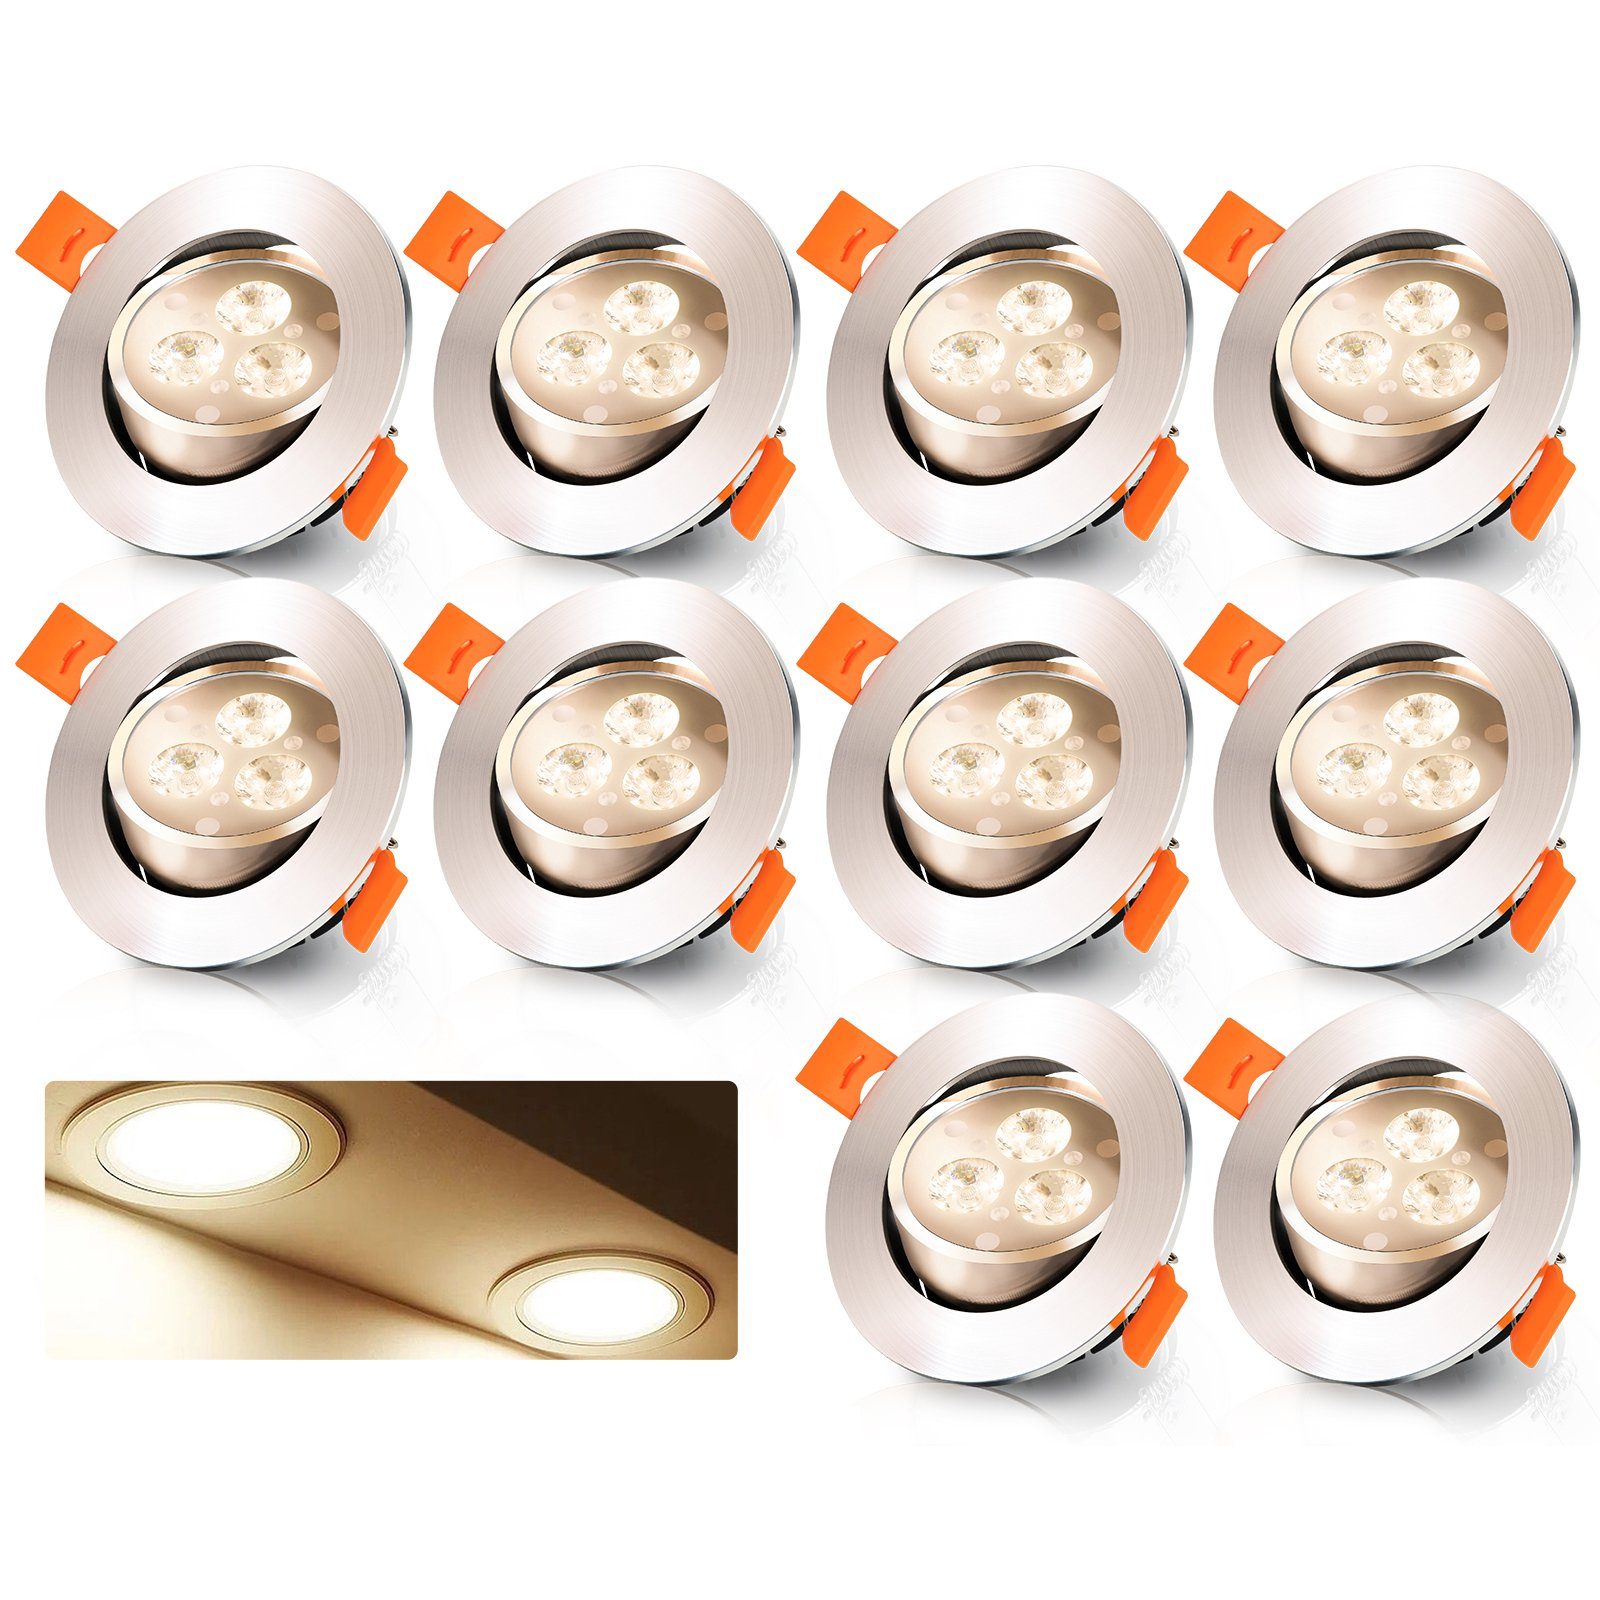 Gimisgu LED Einbauleuchte 3W LED Einbaustrahler Schwenkbar LED Spot Einbauleuchten 10er Set, LED Deckenlampe Warmweiß